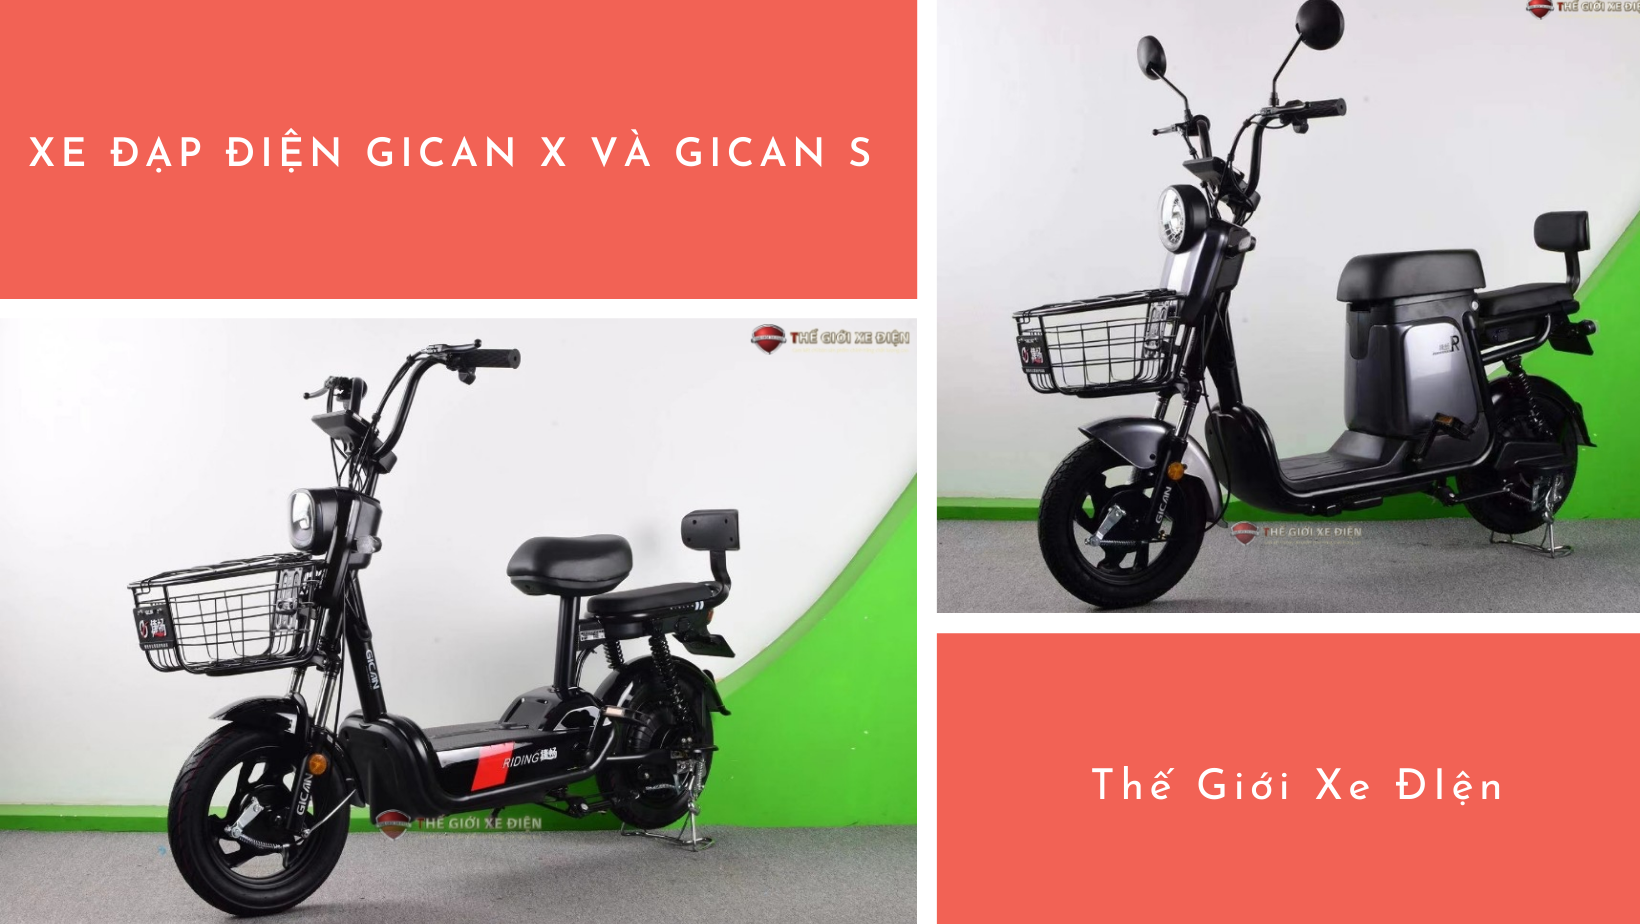 Xe đạp điện Gican X và Gican S